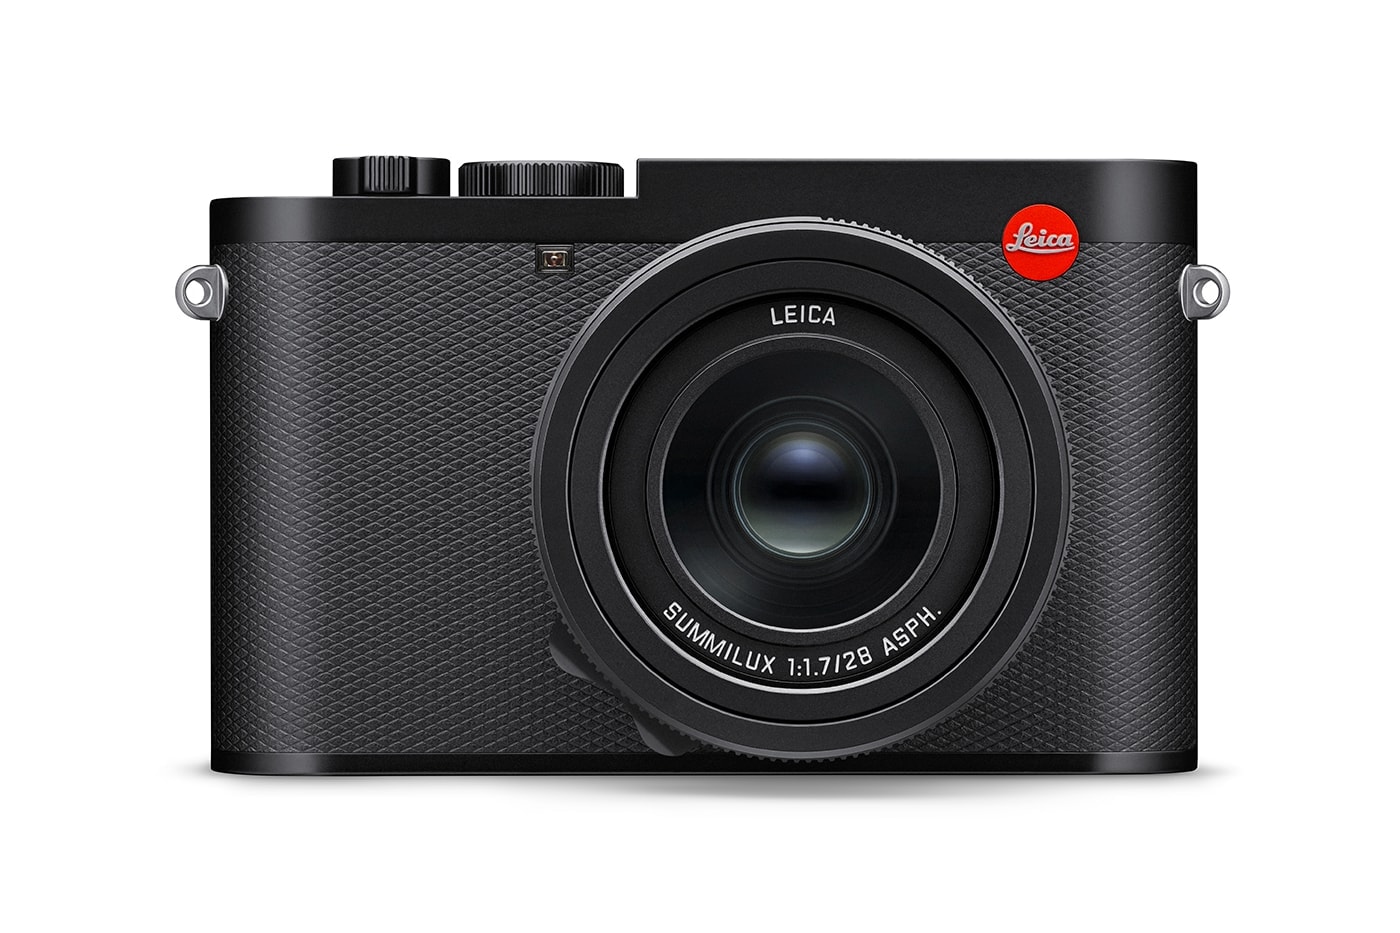 라이카의 새로운 콤팩트 카메라, Q3가 공개됐다